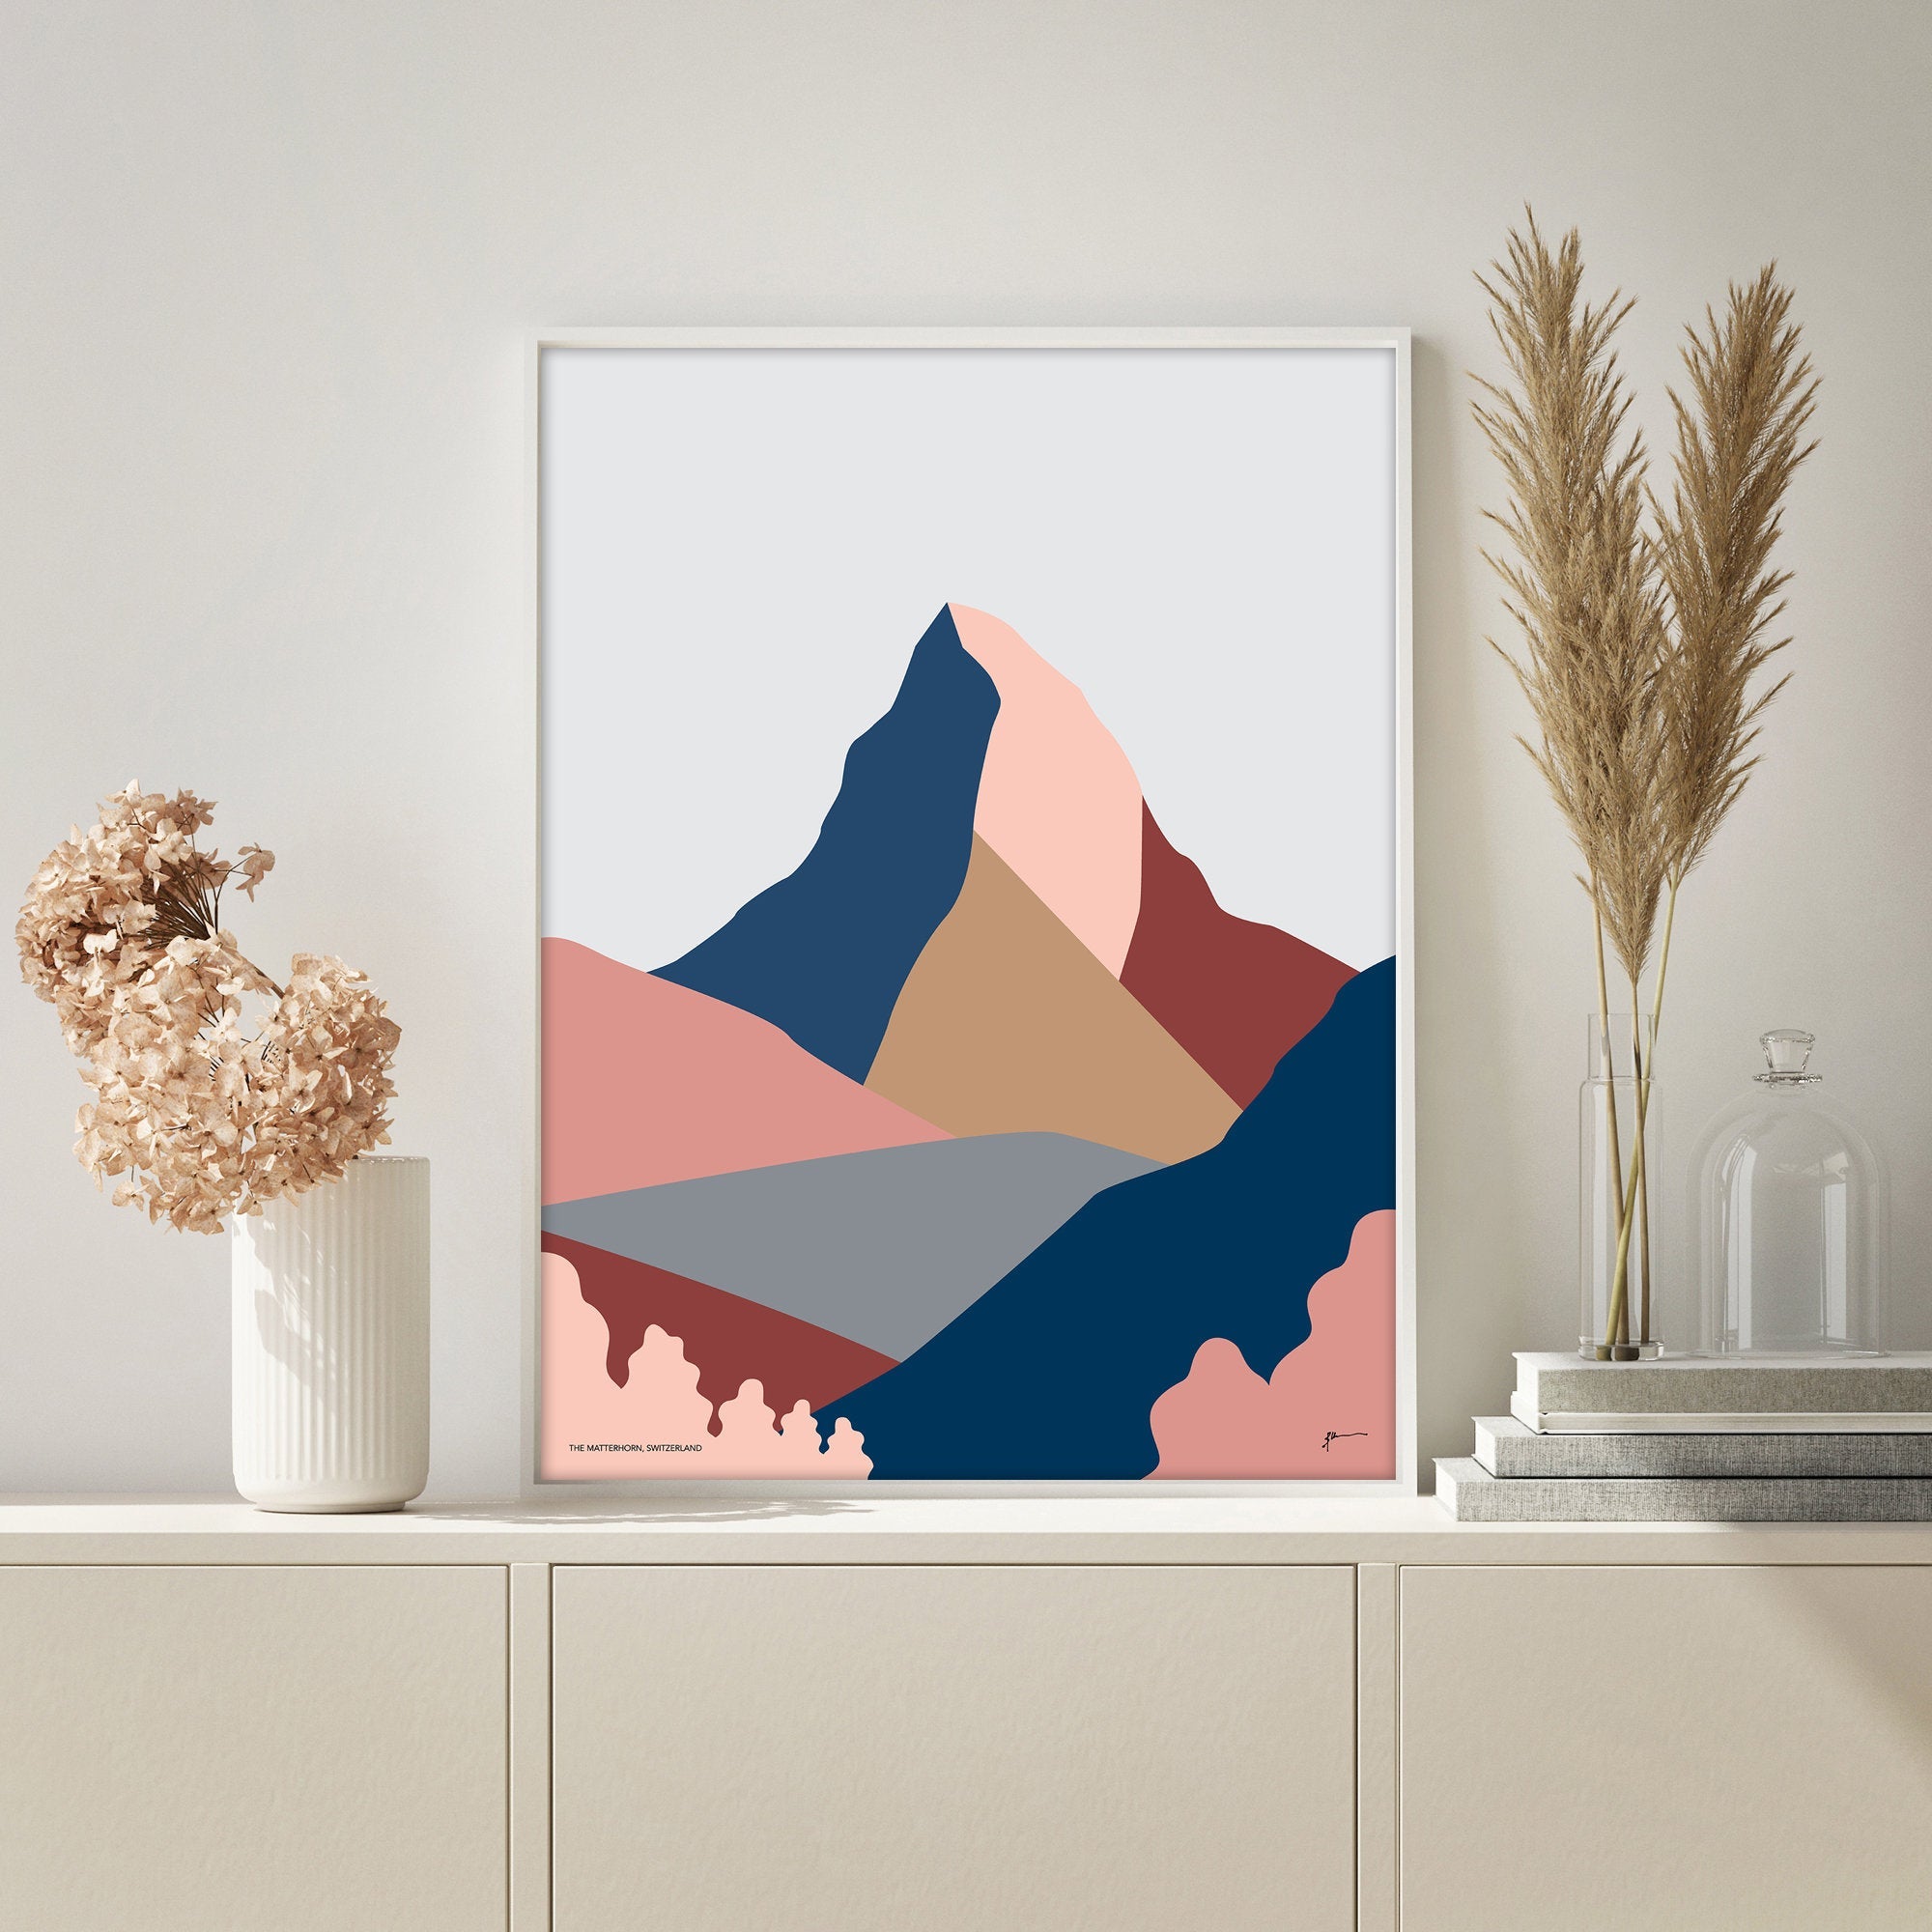 The Matterhorn Art Print. Zermatt, Switzerland and Italy. Modern Mountain Landscape Art